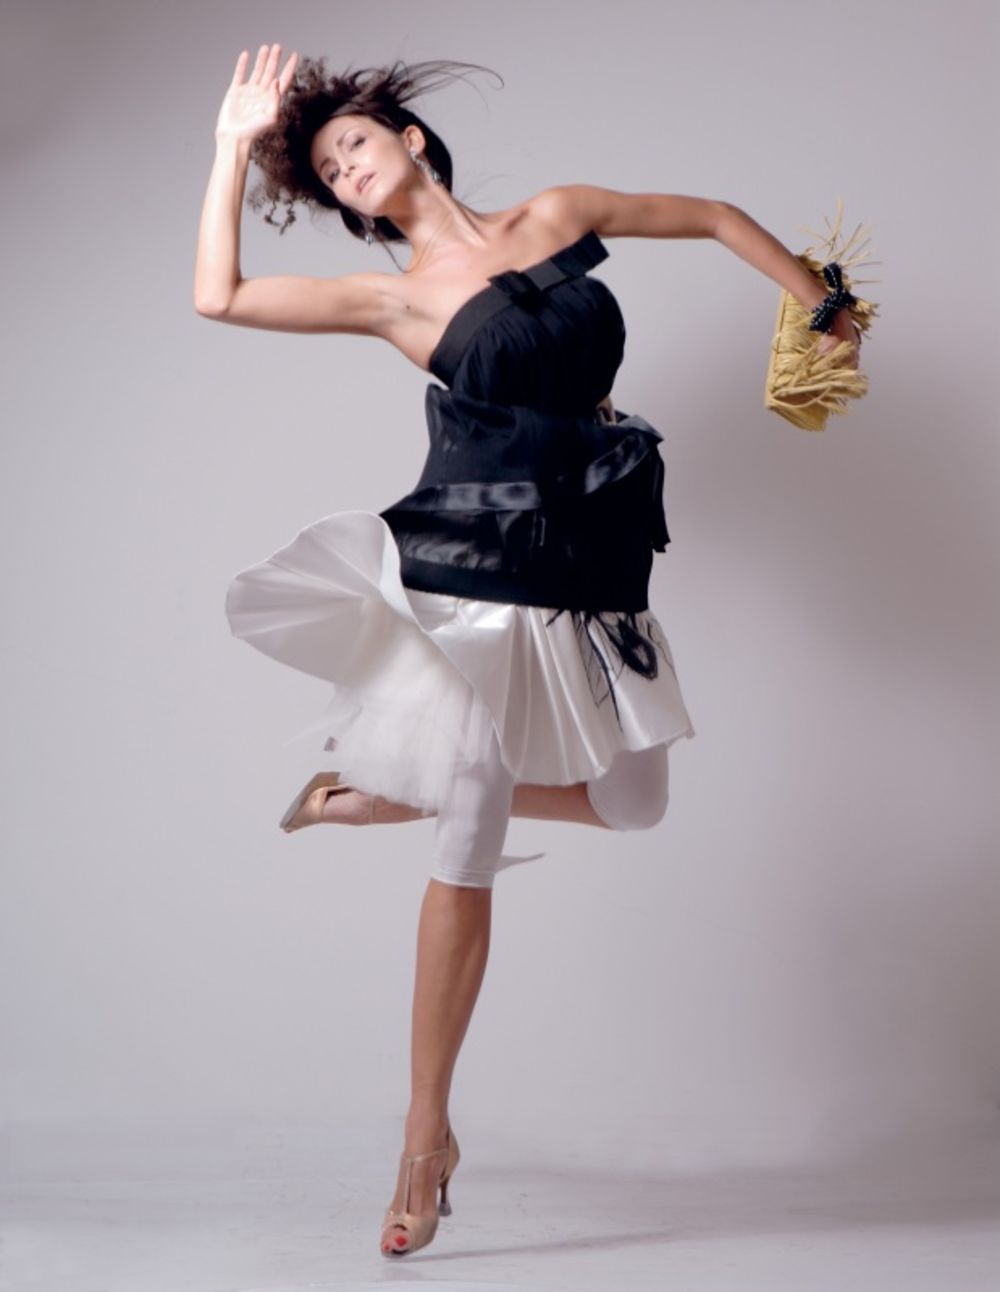 Svoj modni stil bivša balerina Iva Ćirić potpuno je podredila udobnom životu, pa su za nju ovoga leta modni hit tunike i baletanke, a iako već tri godine živi u neposrednoj blizini velikog modnog centra Milana, nije podlegla trendovima u odevanju